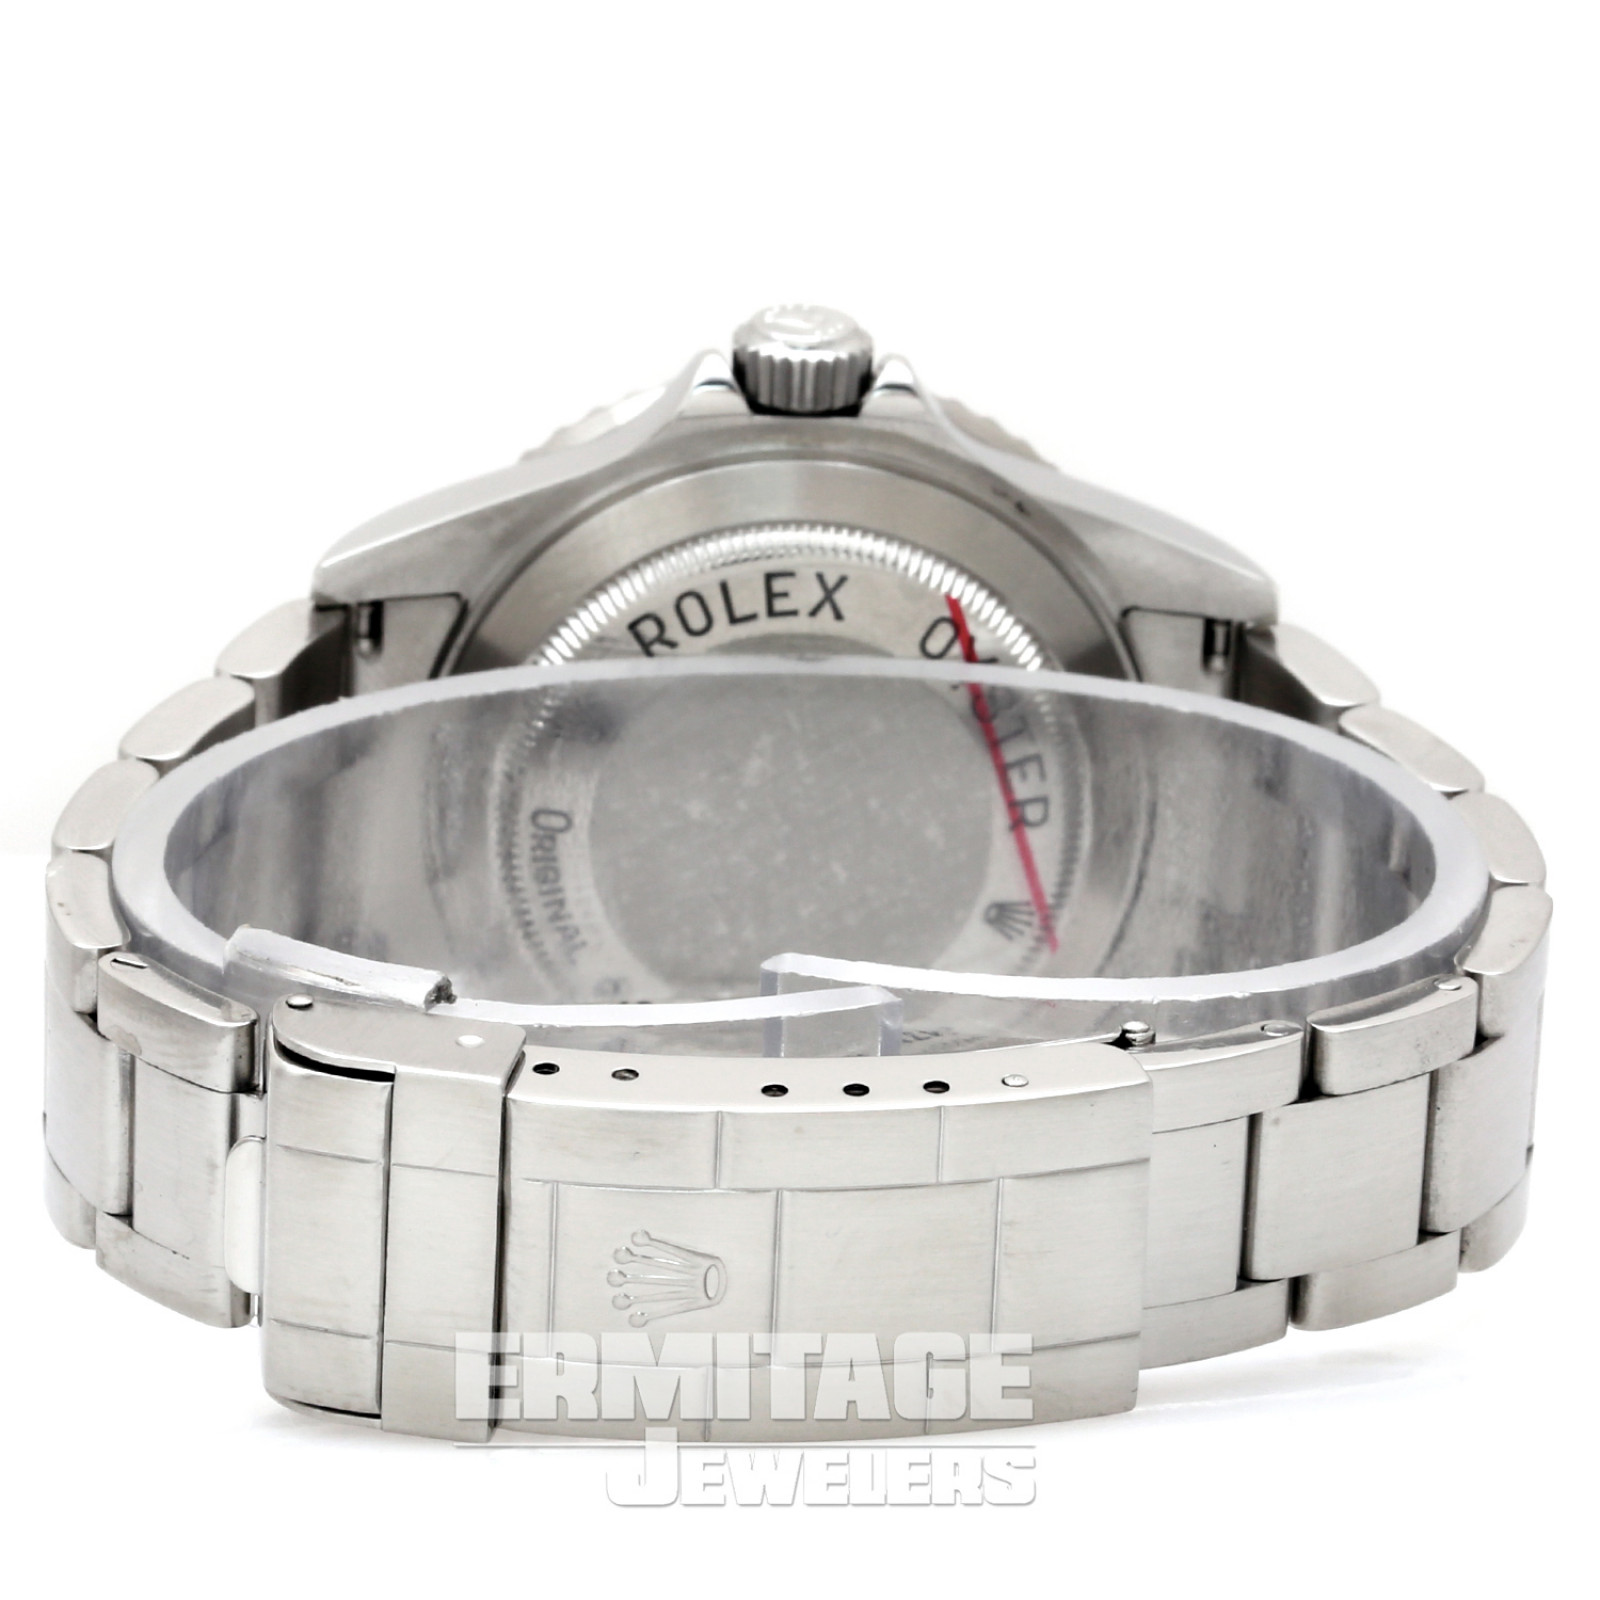 2004 Rolex Sea-Dweller Ref. 16600